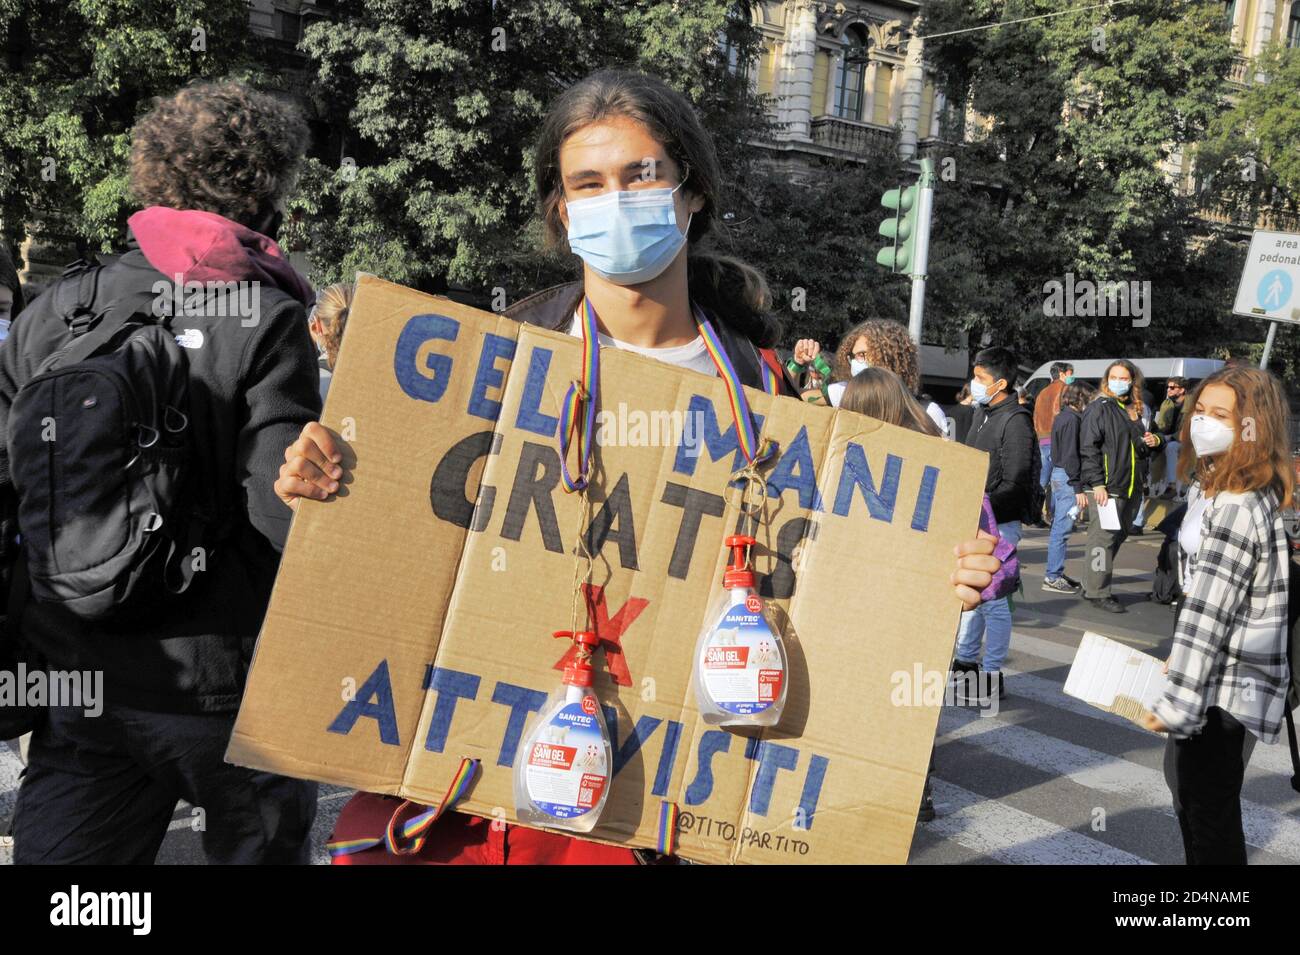 Milan (Italie), octobre 2020, les jeunes de vendredi pour l'avenir, après l'interruption due à l'épidémie de Covid 19, retournent dans les rues pour protester contre le changement climatique, en essayant de respecter les mesures de sécurité heuristiques. Banque D'Images